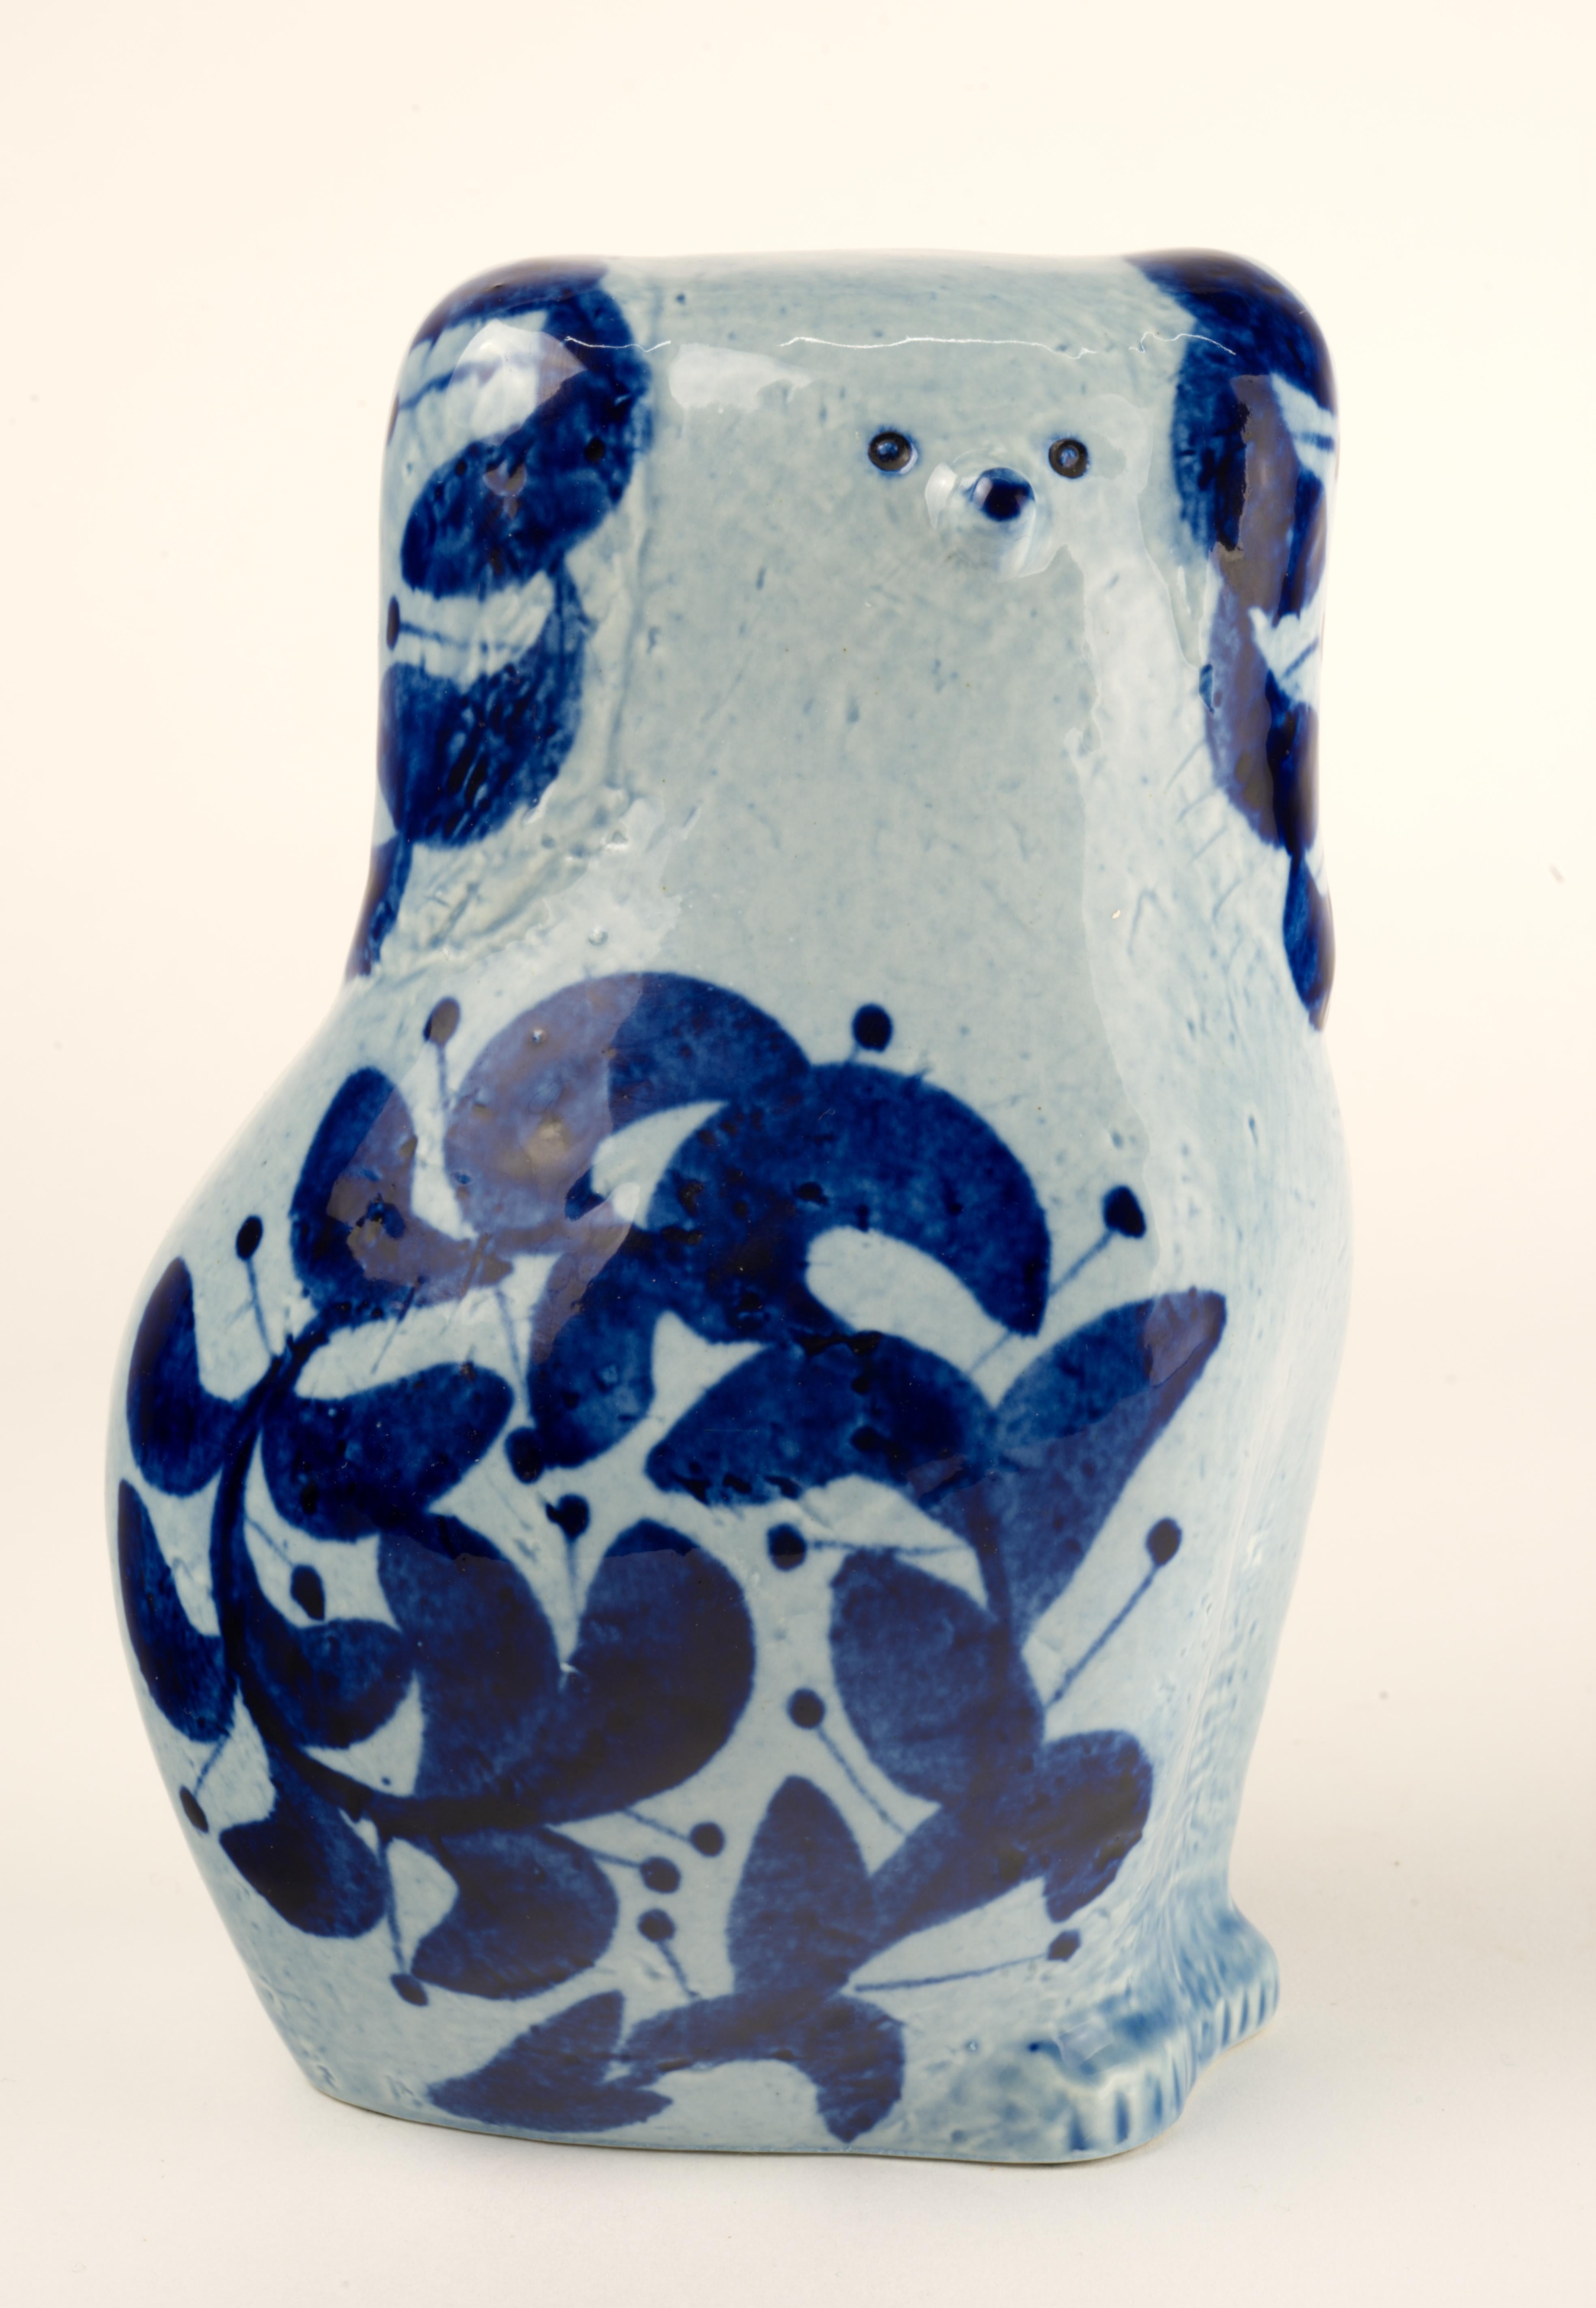  Le caniche est en grès blanc avec une glaçure bleu clair brillante et des décorations peintes à la main en bleu foncé. Il a été conçu par Lisa Larson (1931-2024) dans le cadre de la série 